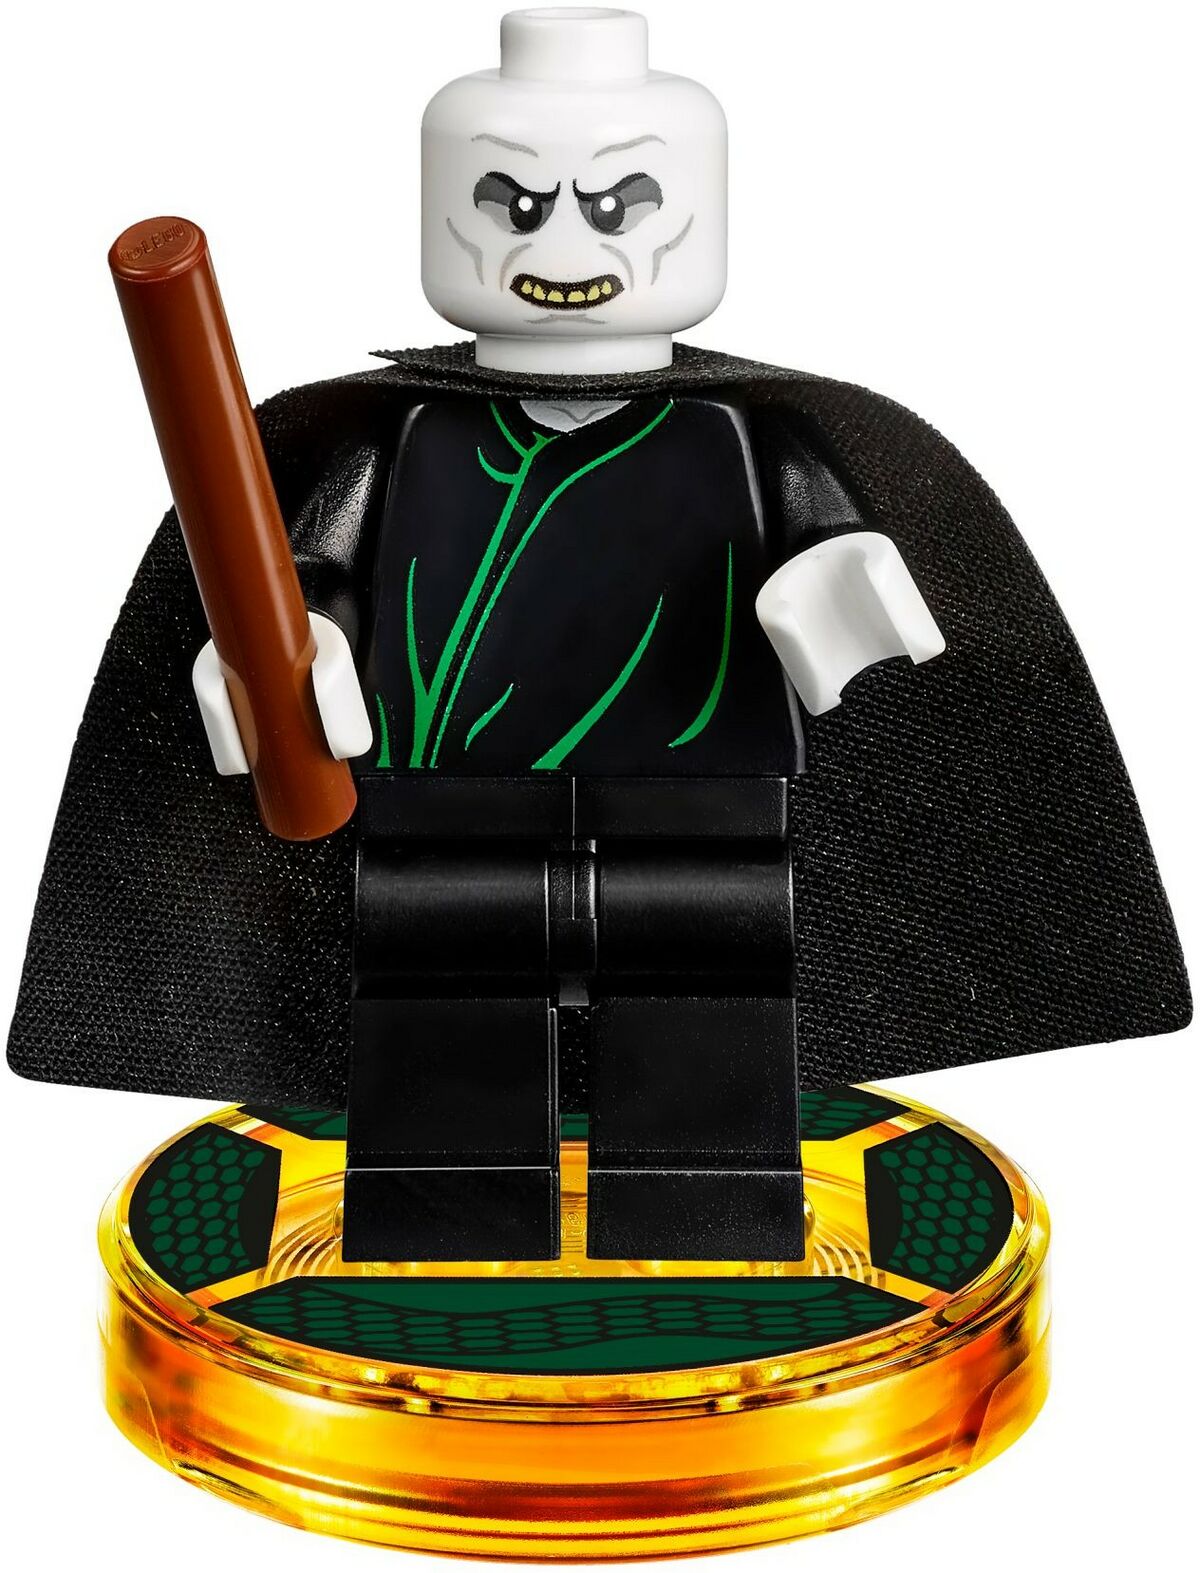 Dobby, LEGO Dimensions Wiki